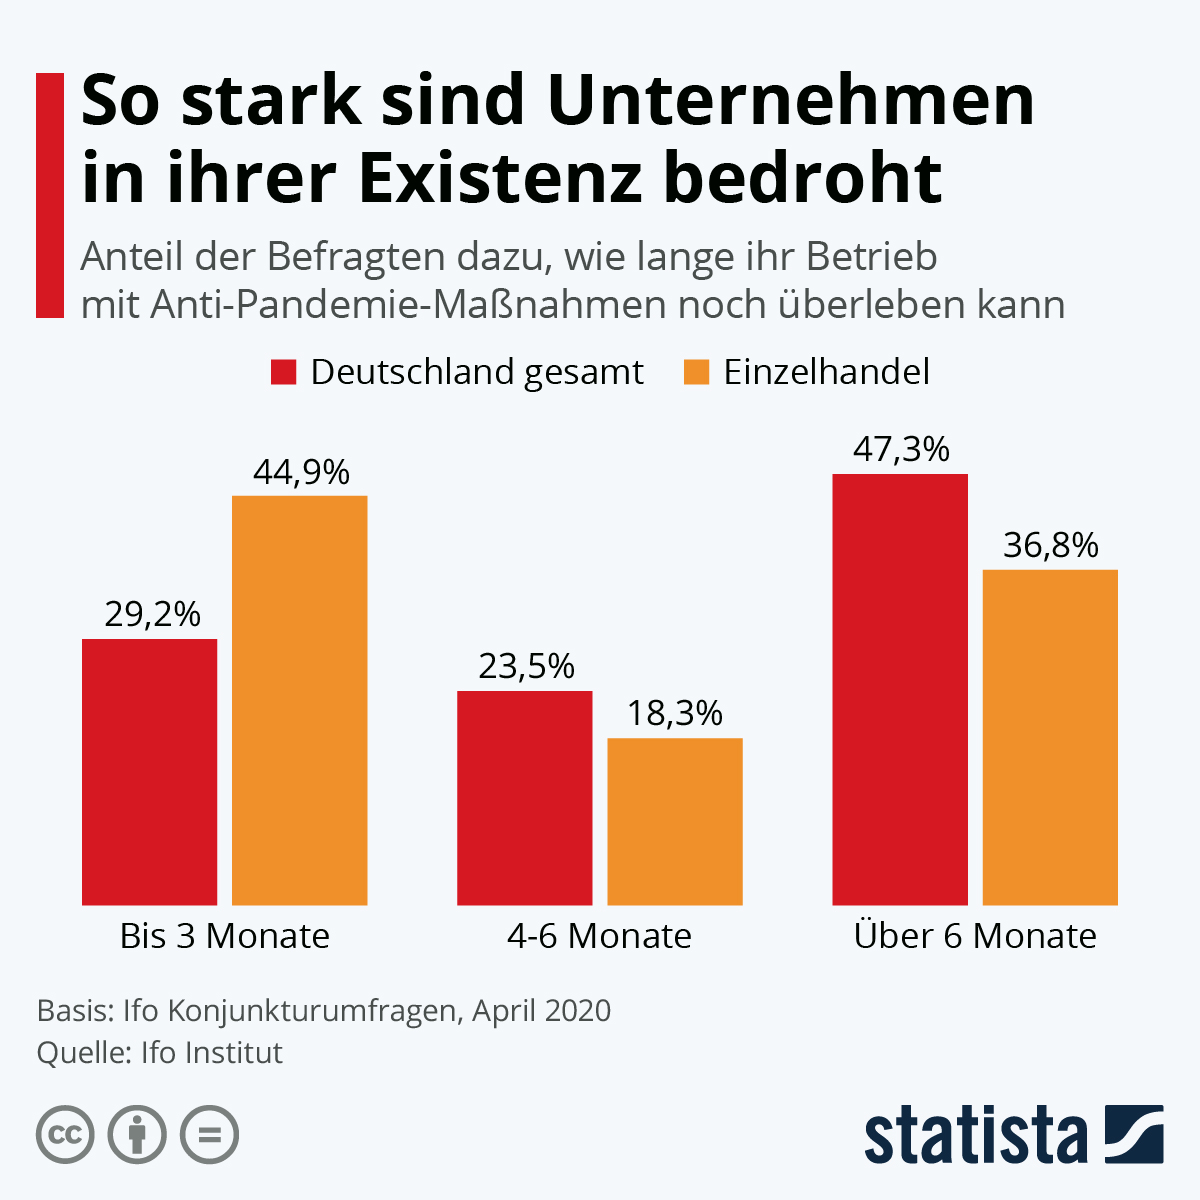 Statista zum Beitrag von Duhatschek und Winkler: Corona Schnellkredit 2020 KfW